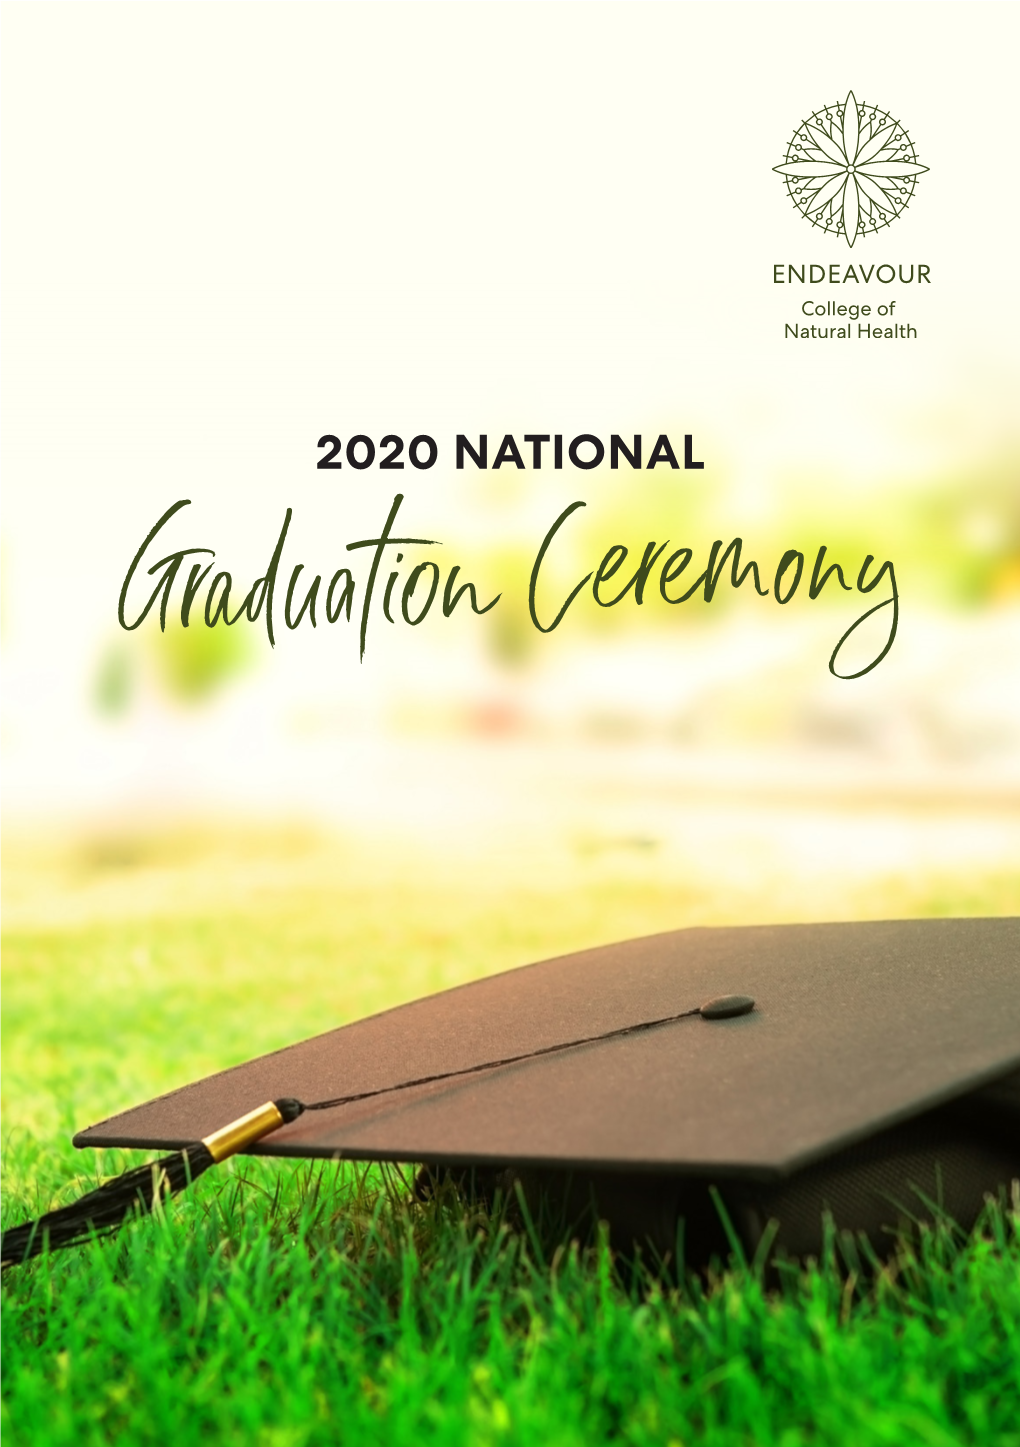 2020 NATIONAL Graduationceremony Dear Endeavour Graduands